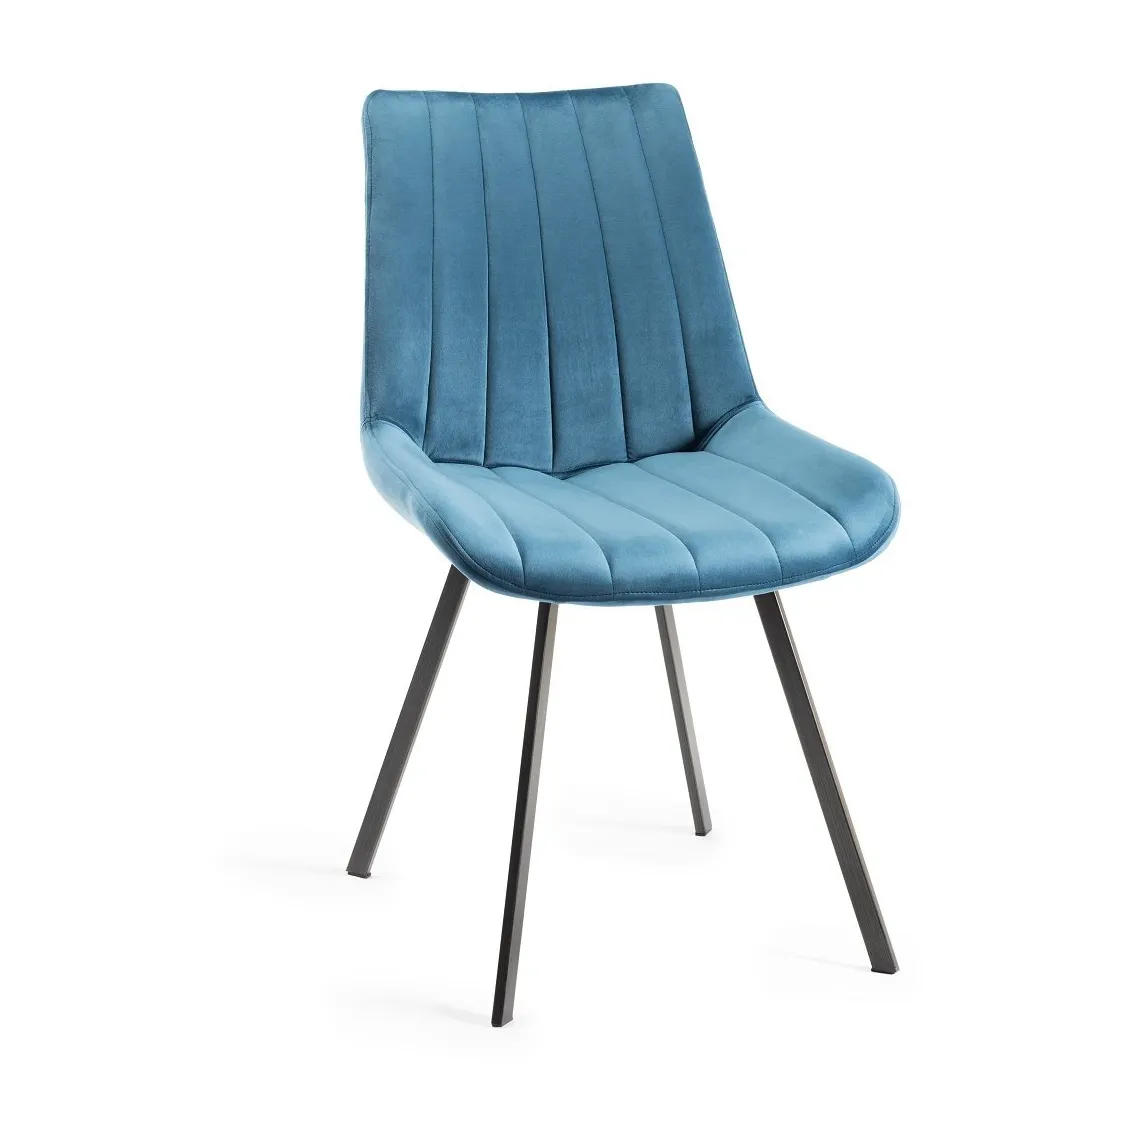 수락 사용자 정의 세로 줄무늬 재봉 덮개를 씌운 의자 라운지 의자 금속 다리와 블루 벨벳 식당 의자